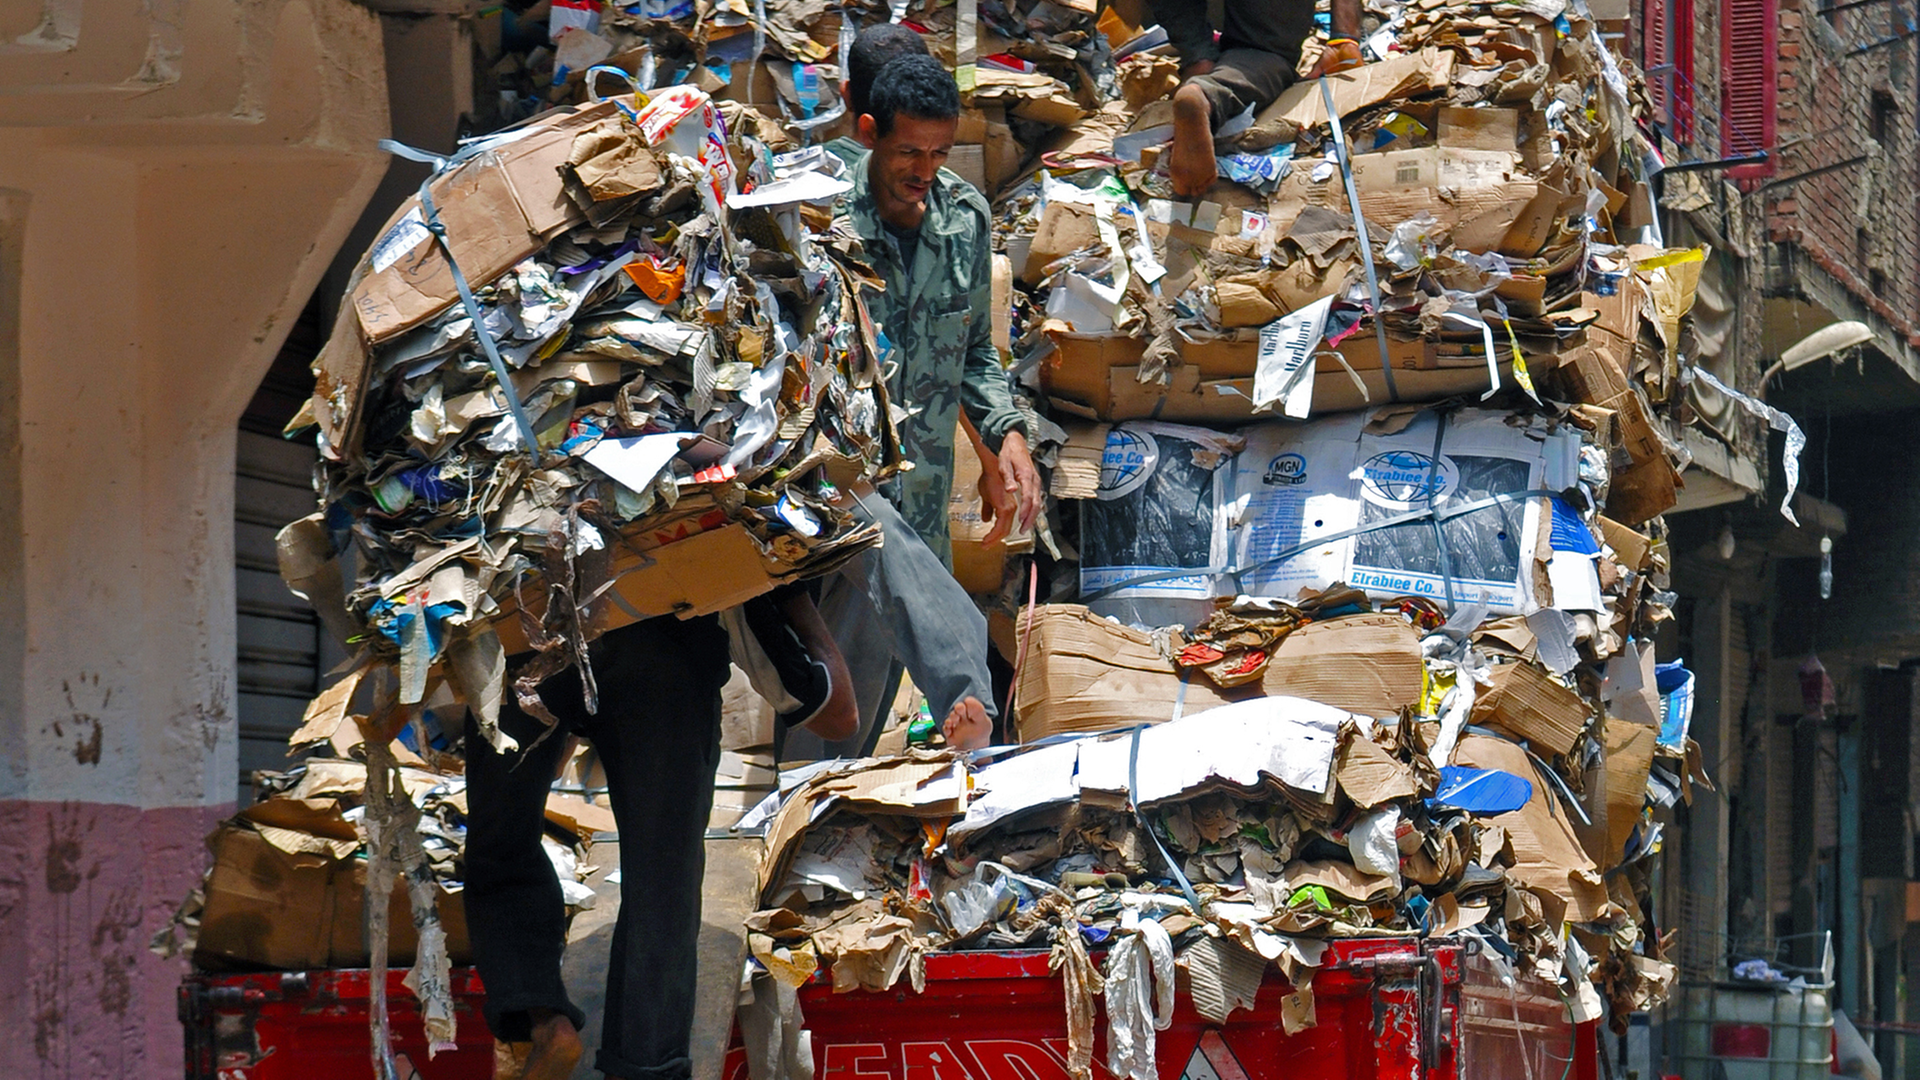 Über eine Holzplanke beladen Männer in Manshiet Nasr einen LKW mit kompaktiertem und sortiertem Altpapierabfall, aufgenommen am 21.05.2014. In Kairo wird die Müllentsorgung von rund 70000 Müllsammlern, den sogenannten Zabbaleen, gemanagt. Eines der größten Viertel, in denen die Zabbaleen leben, ist Manshiet Nasr, wo die meistenteils koptischen Müllsammler direkt in ihren Häusern auch ihrer Arbeit nachgehen. Sie bestreiten ihren Lebensunterhalt mit den Gebühren vom Müllsammeln und den Erträgen aus dem unerreicht hohen Grad im Recycling des gesammelten Hausmülls.